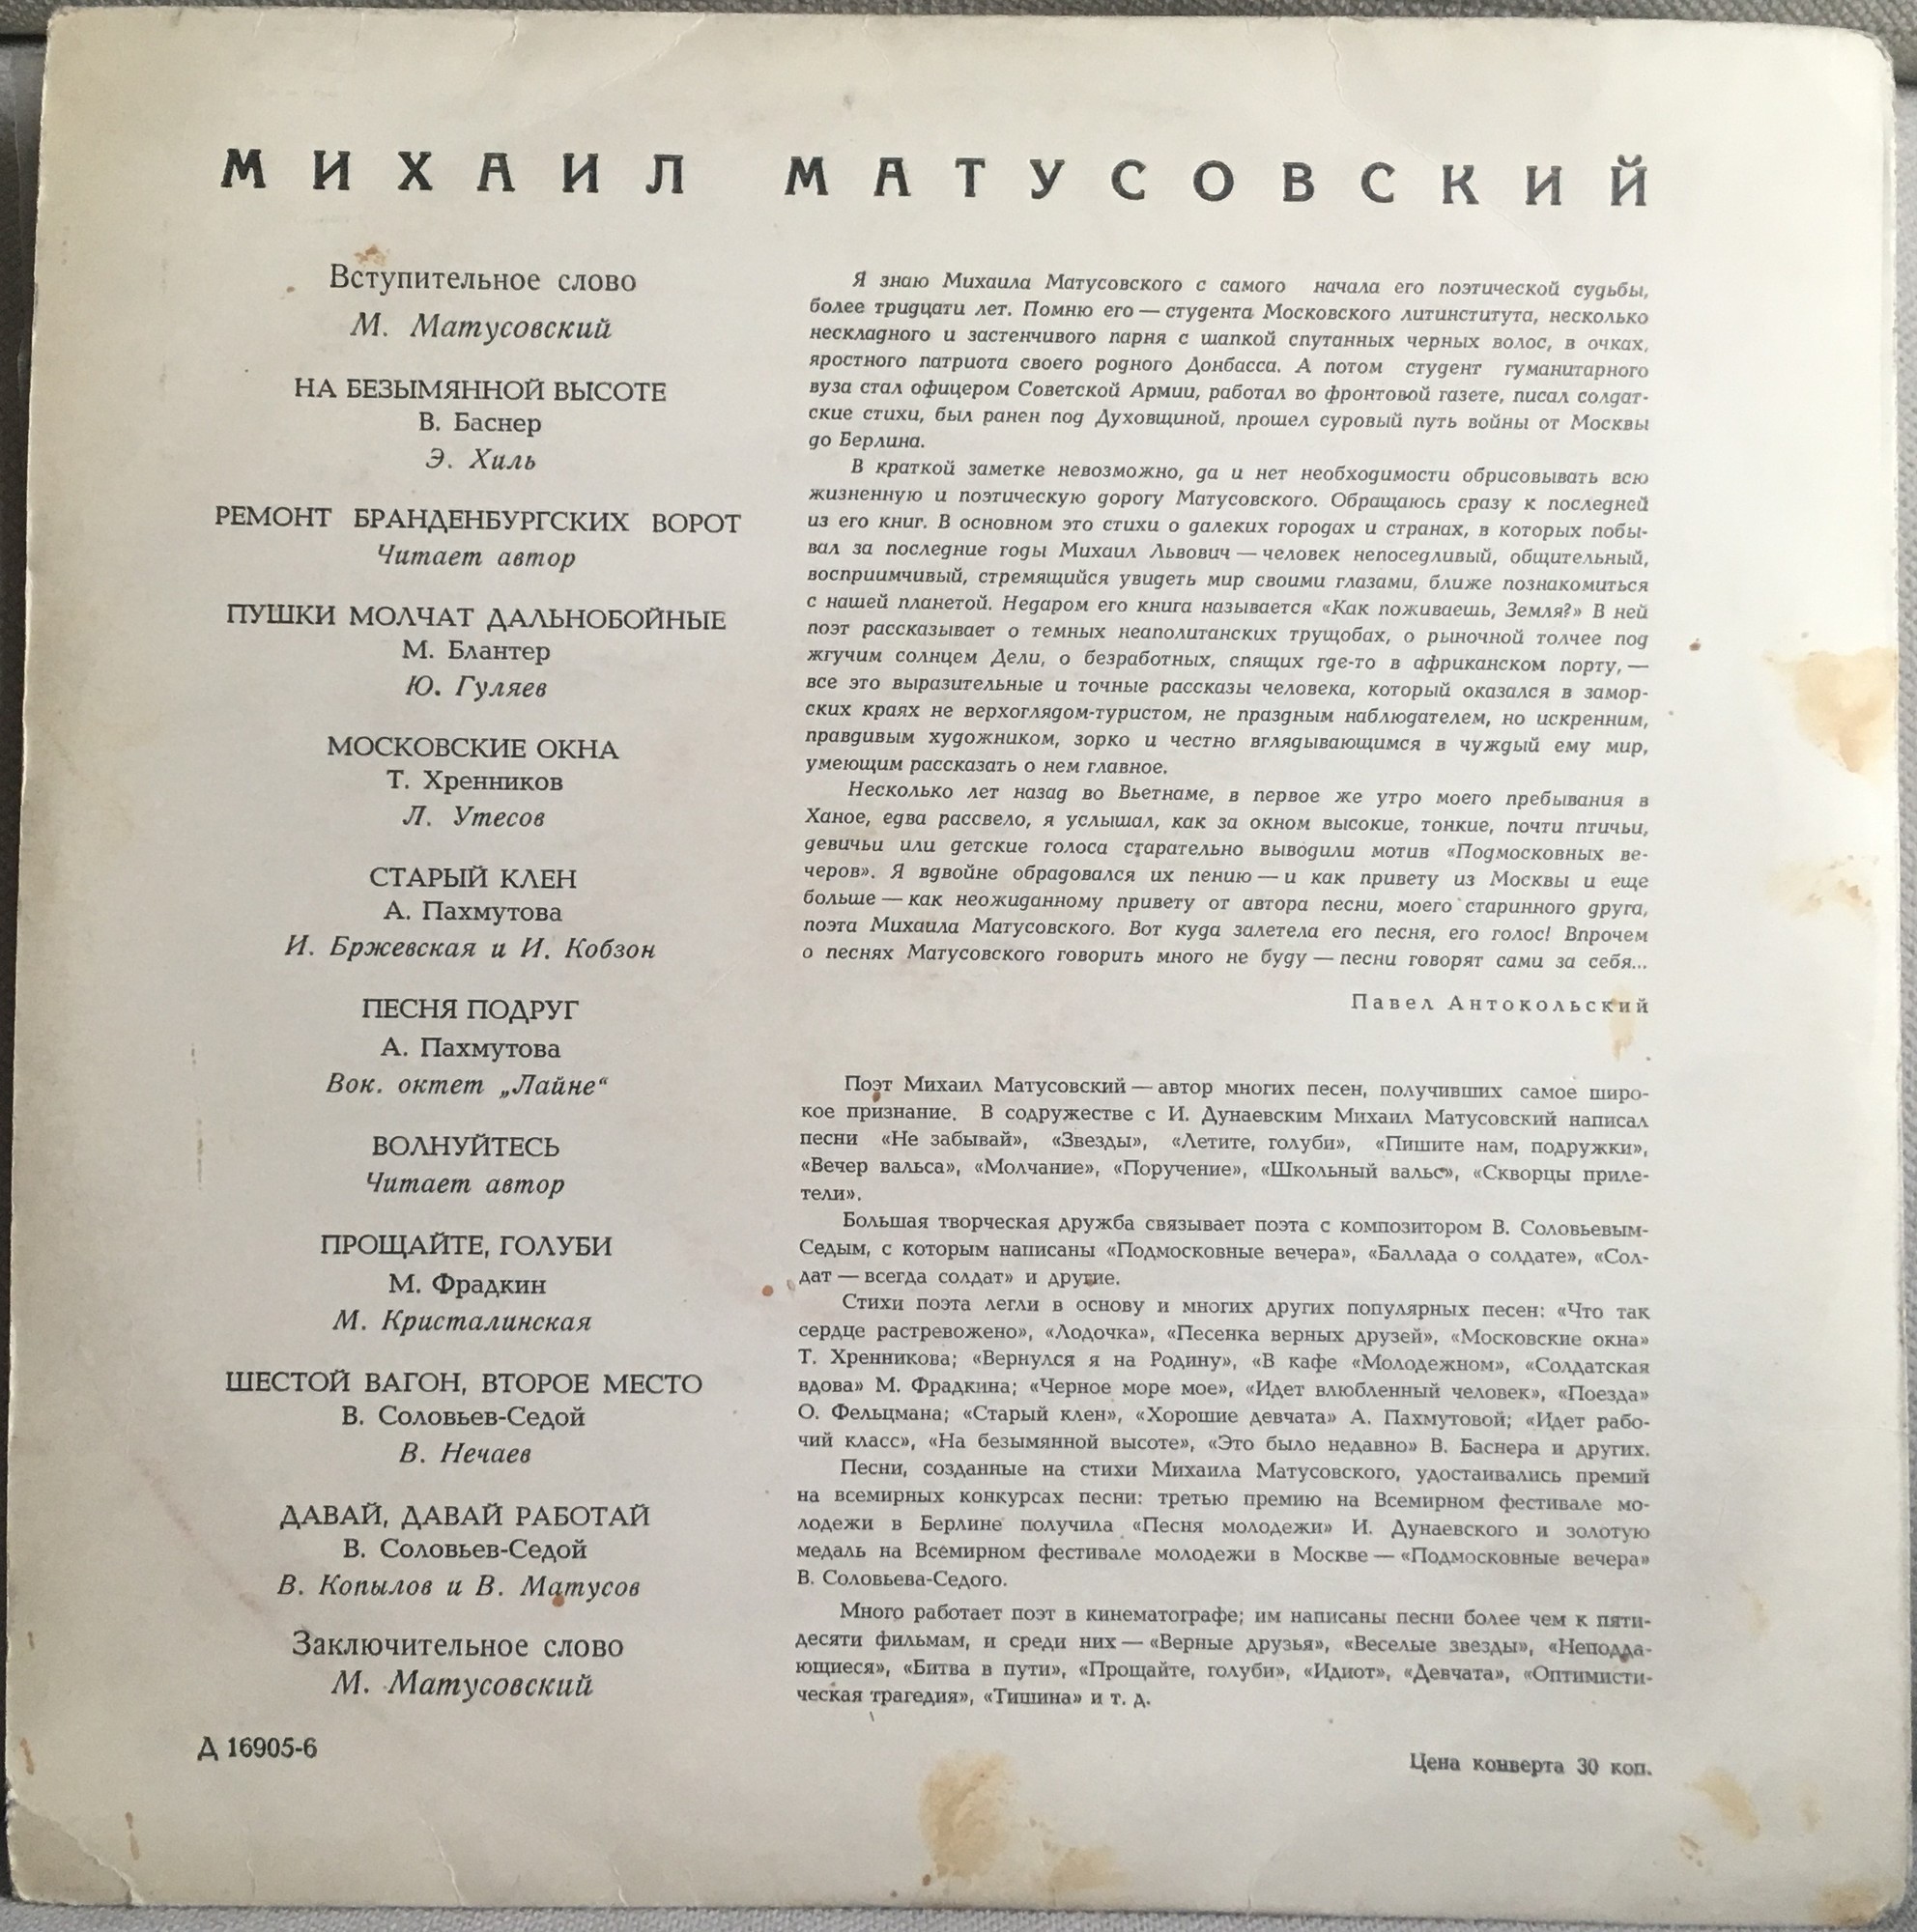 Михаил МАТУСОВСКИЙ (1915-1990): "Стихи и песни"